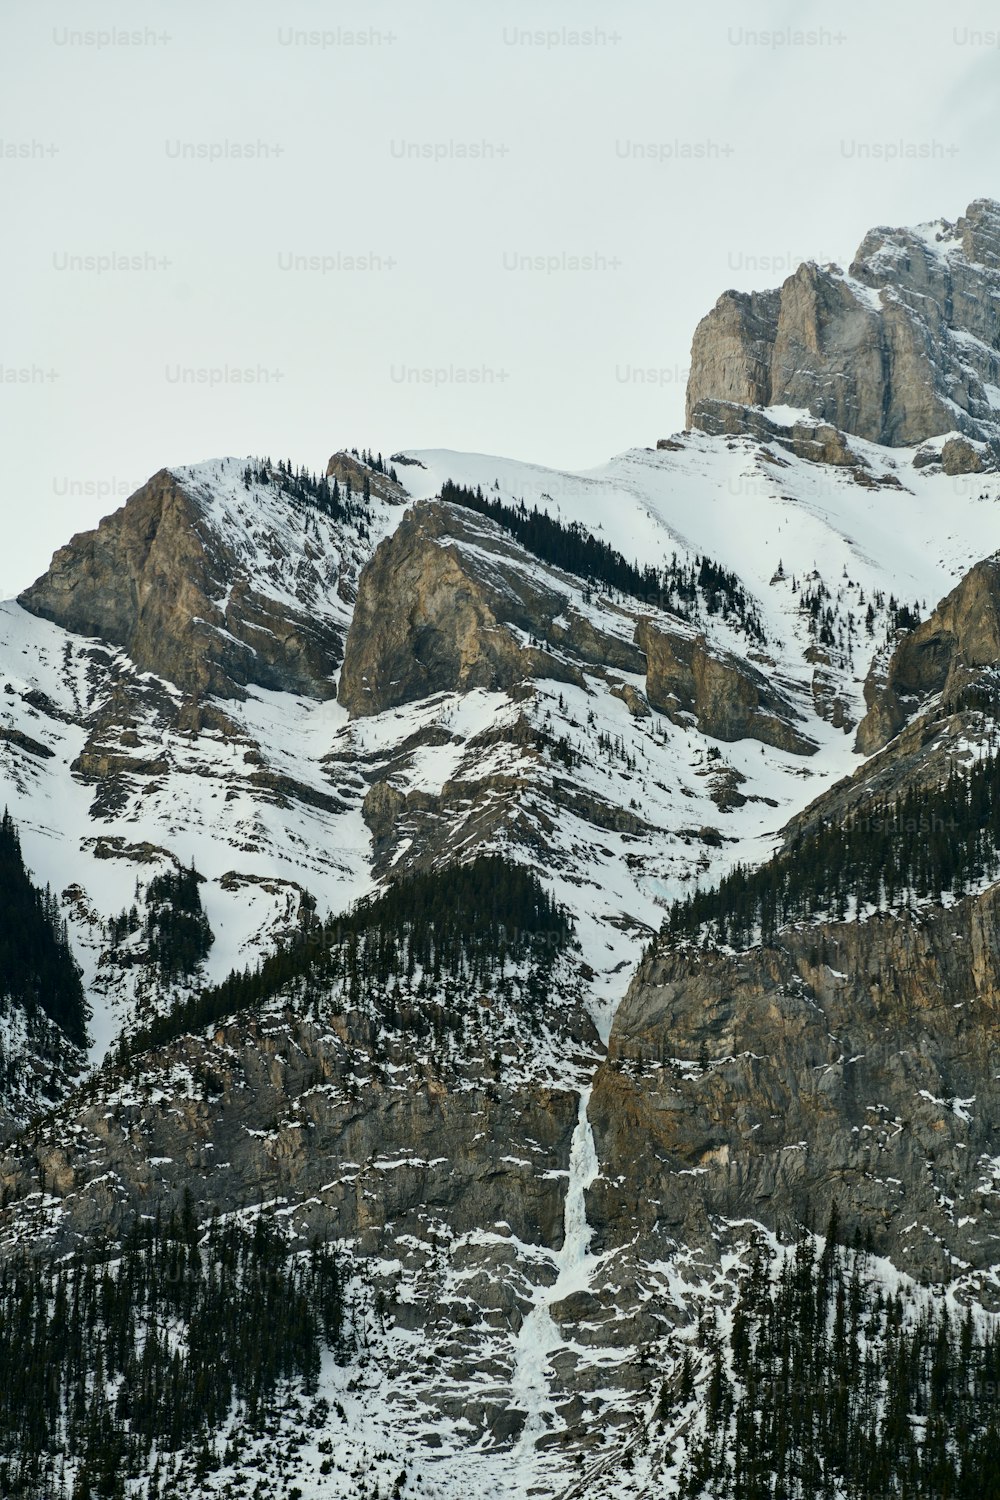 Una catena montuosa coperta di neve con alberi in primo piano